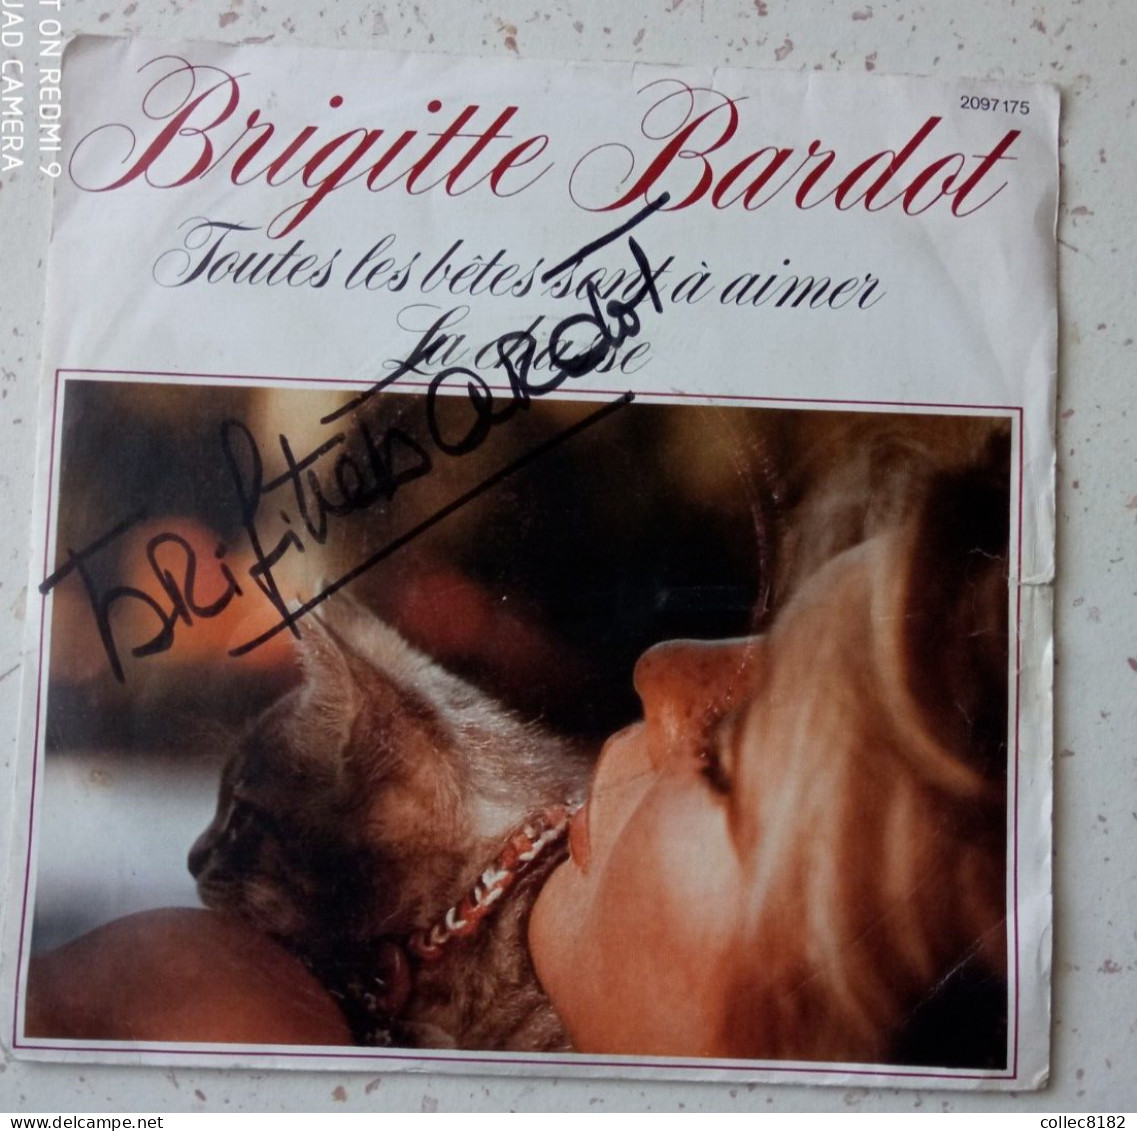 Autographe Original De Brigitte Bardot Sur 45 Tr Toutes Les Bêtes Sont à Aimer Port Offert France - Andere - Franstalig